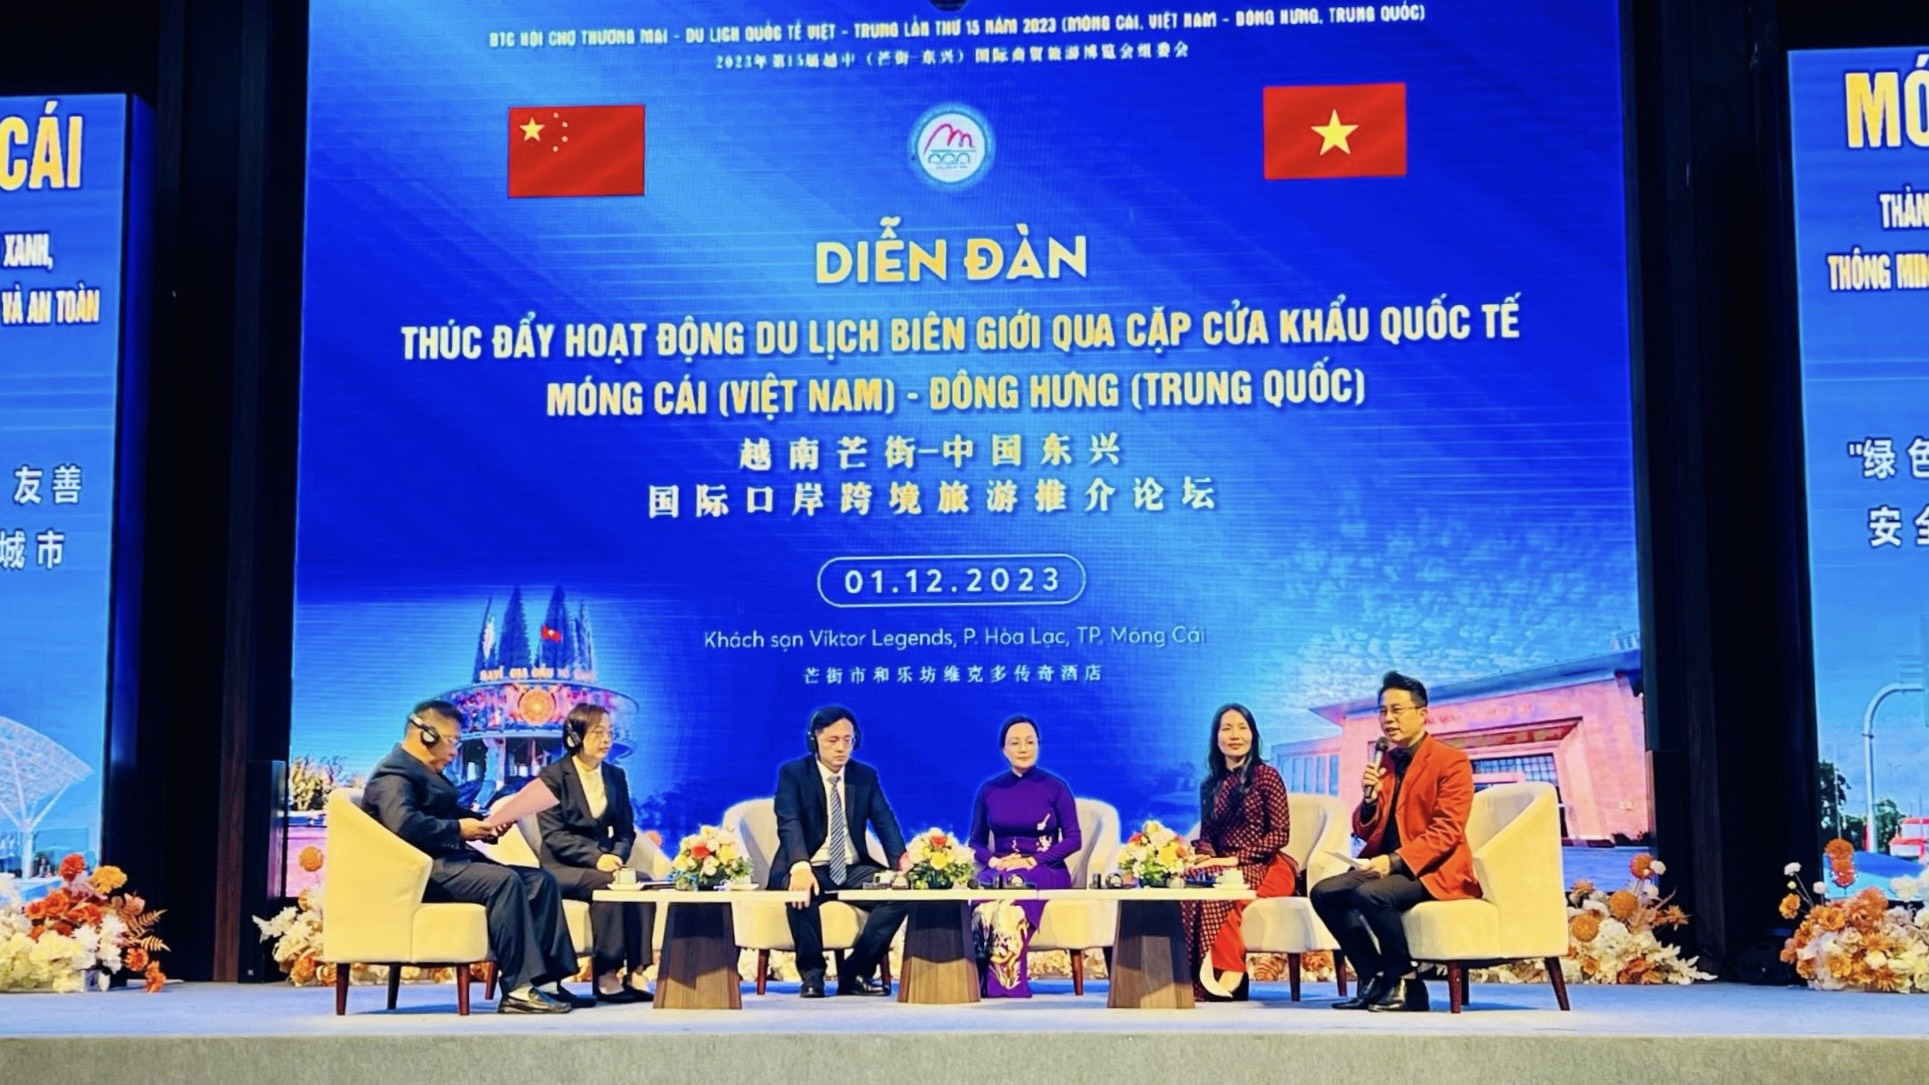 Cục trưởng Nguyễn Trùng Khánh: Cửa khẩu quốc tế Móng Cái - Đông Hưng sẽ là cầu nối thúc đẩy hợp tác thu hút khách du lịch Việt Nam - Trung Quốc - Ảnh 3.